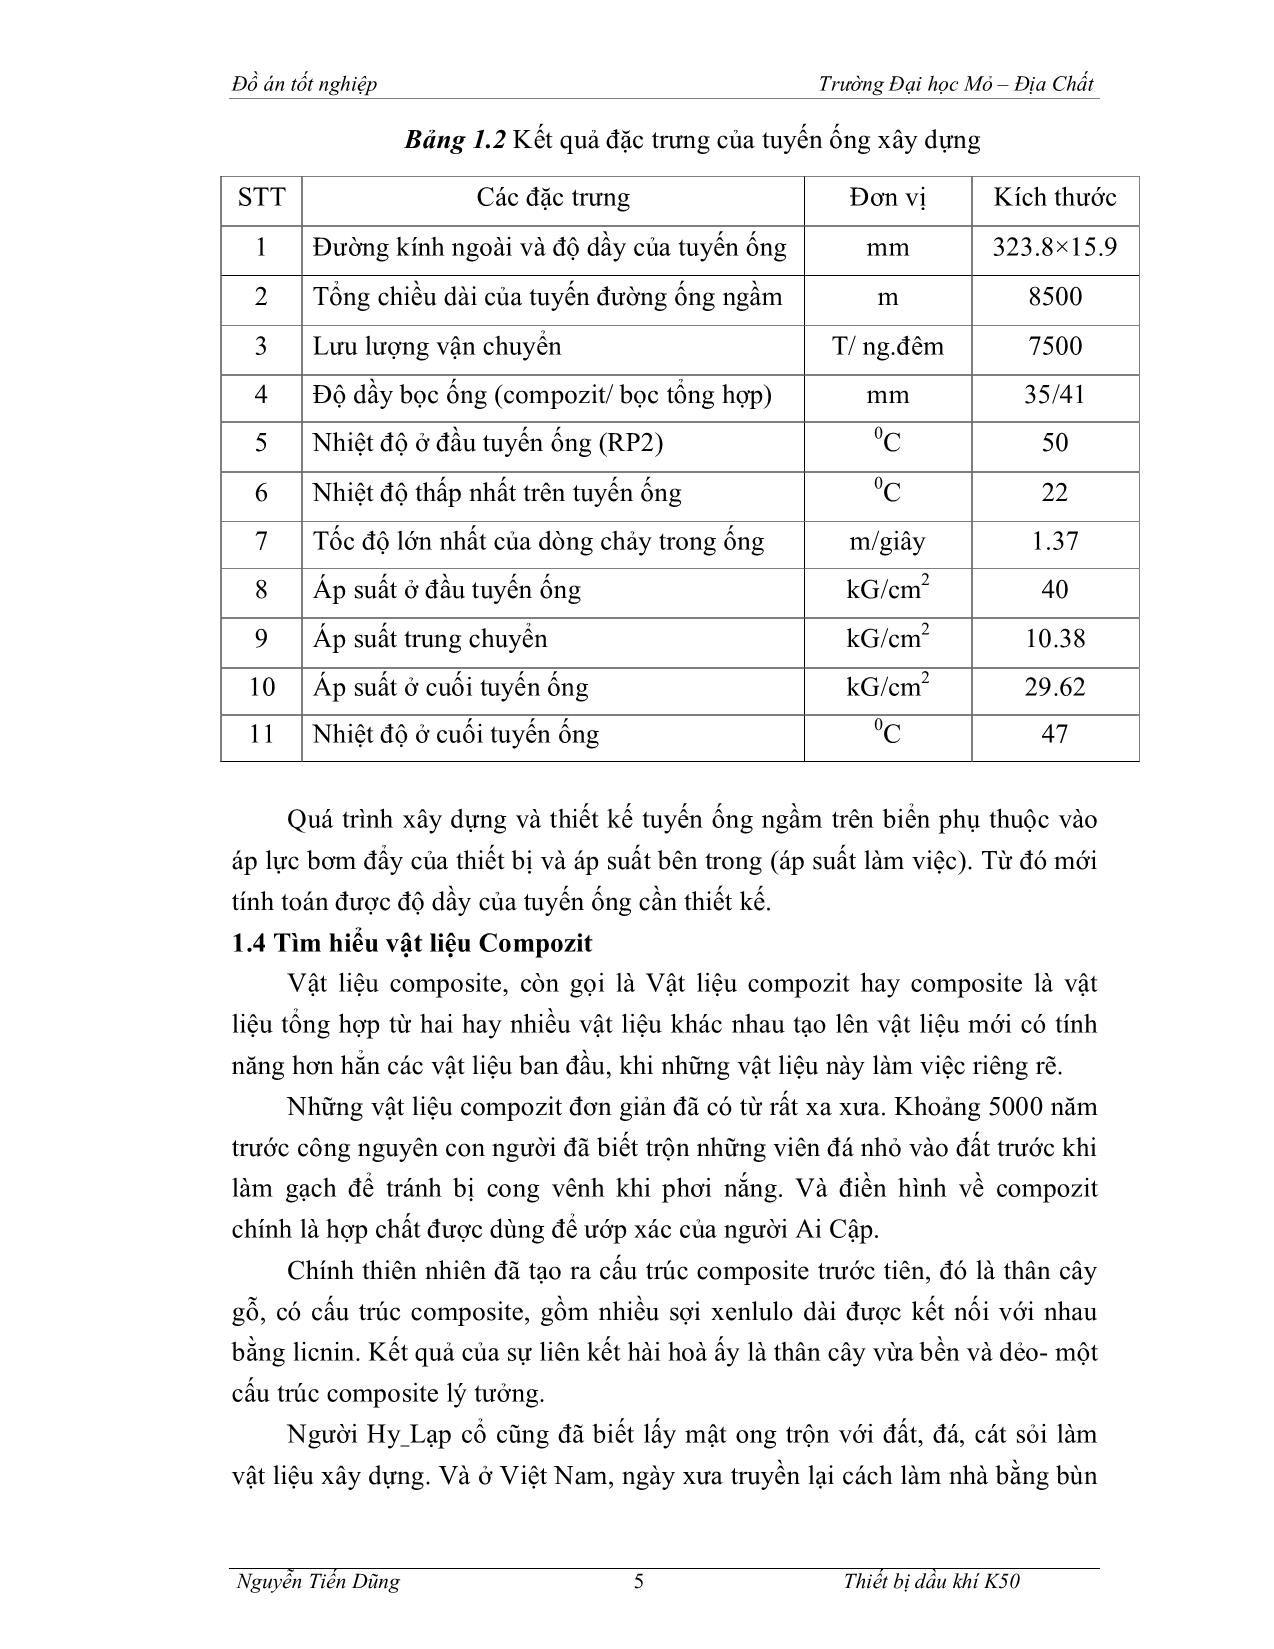 Đồ án Tính toán thi công, lắp đặt tuyến ống dẫn dầu RP2 – UBN3 trang 5